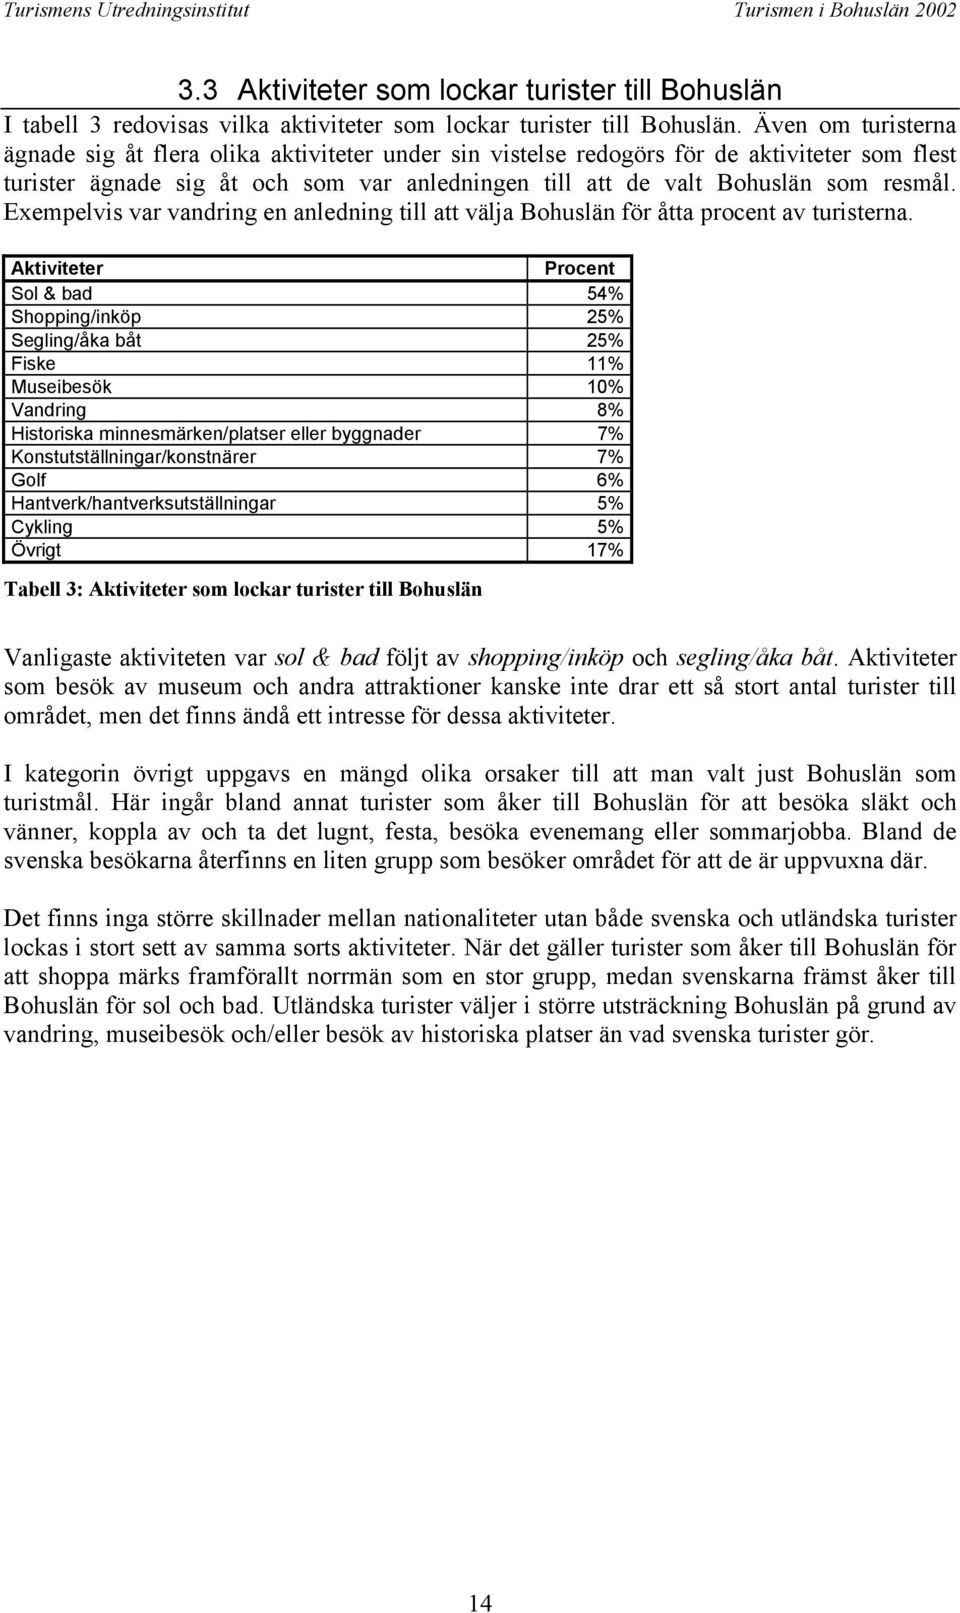 Exempelvis var vandring en anledning till att välja Bohuslän för åtta procent av turisterna.